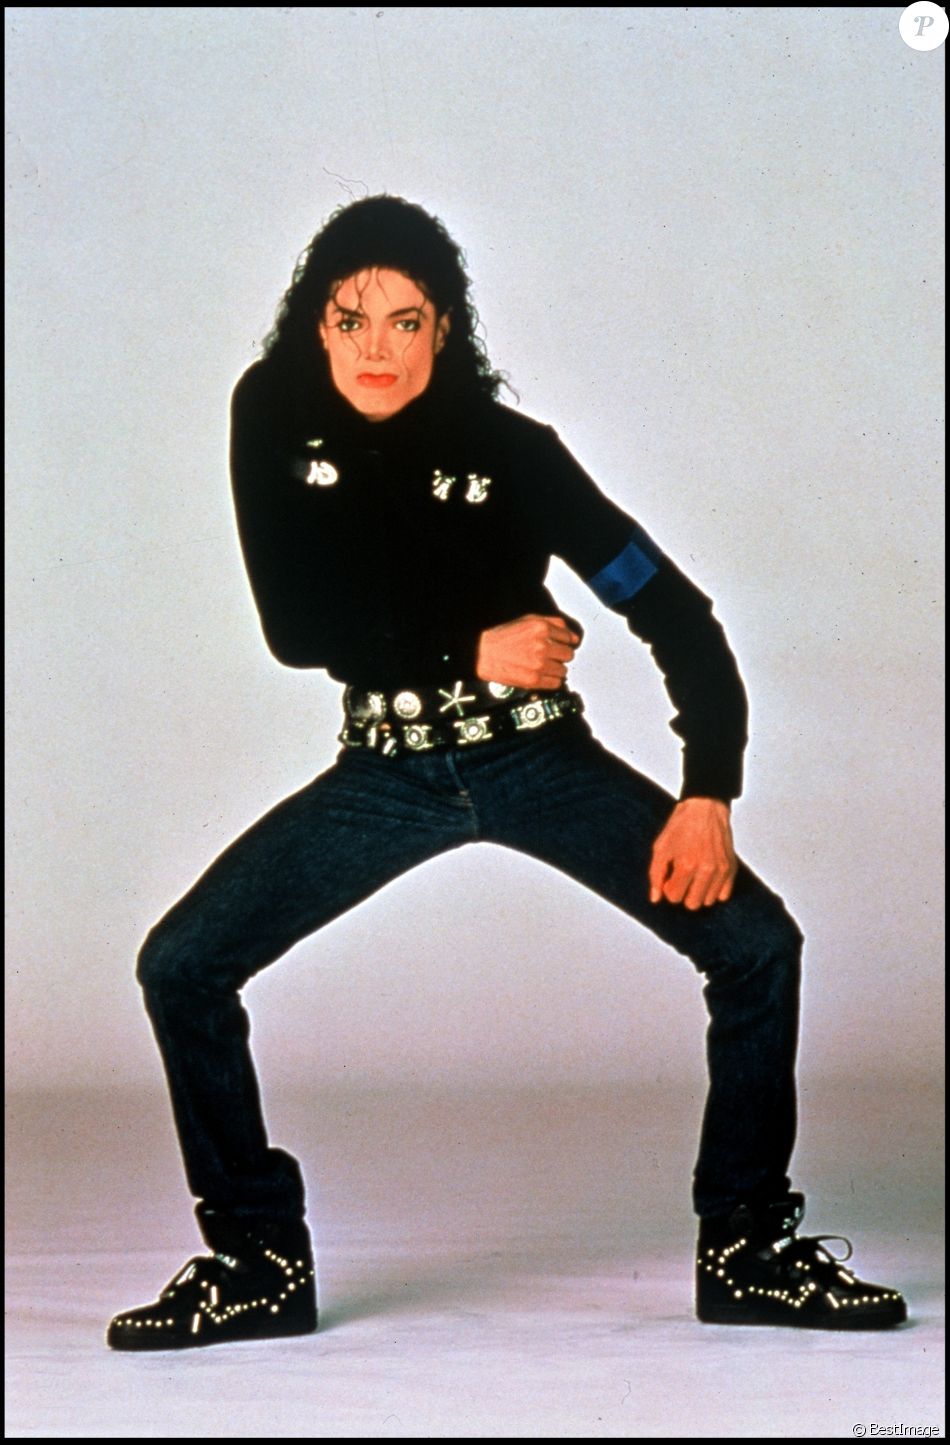 Image promotionnelle de Michael Jackson datée du 16 août 1990